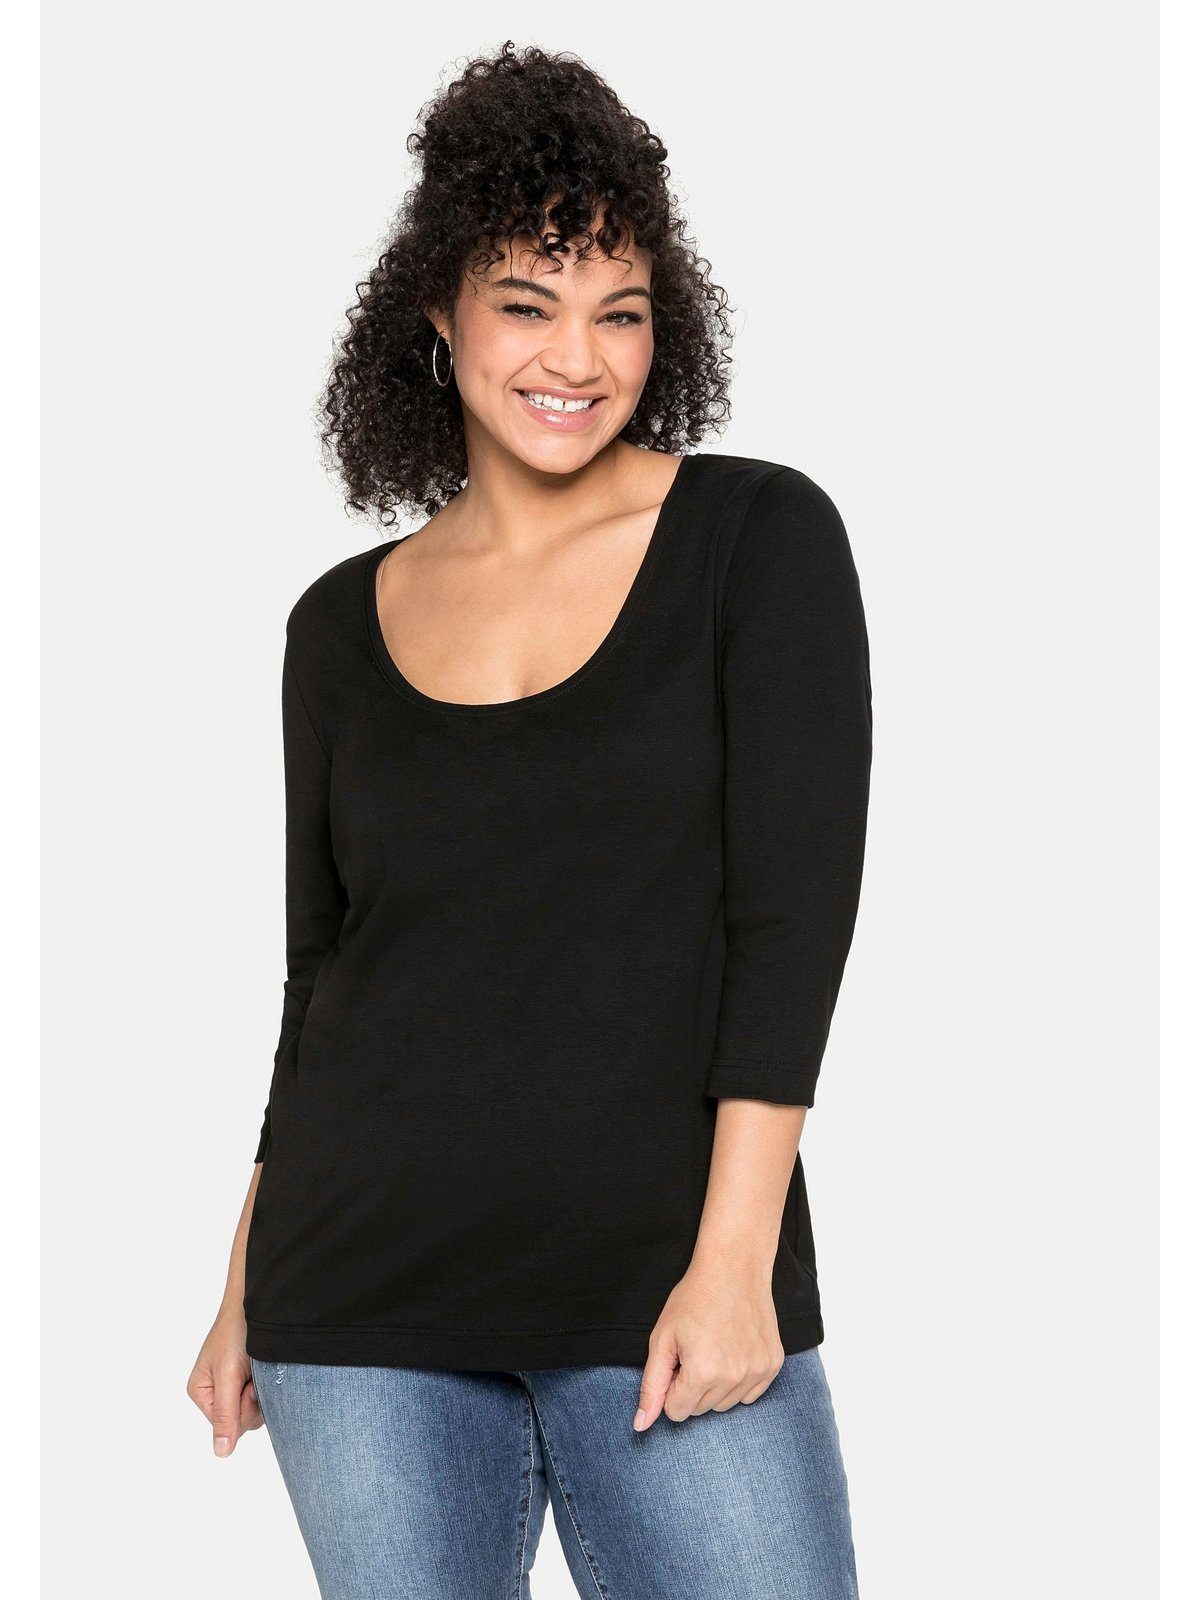 schwarz Große 3/4-Arm-Shirt reiner Baumwolle aus Sheego Größen